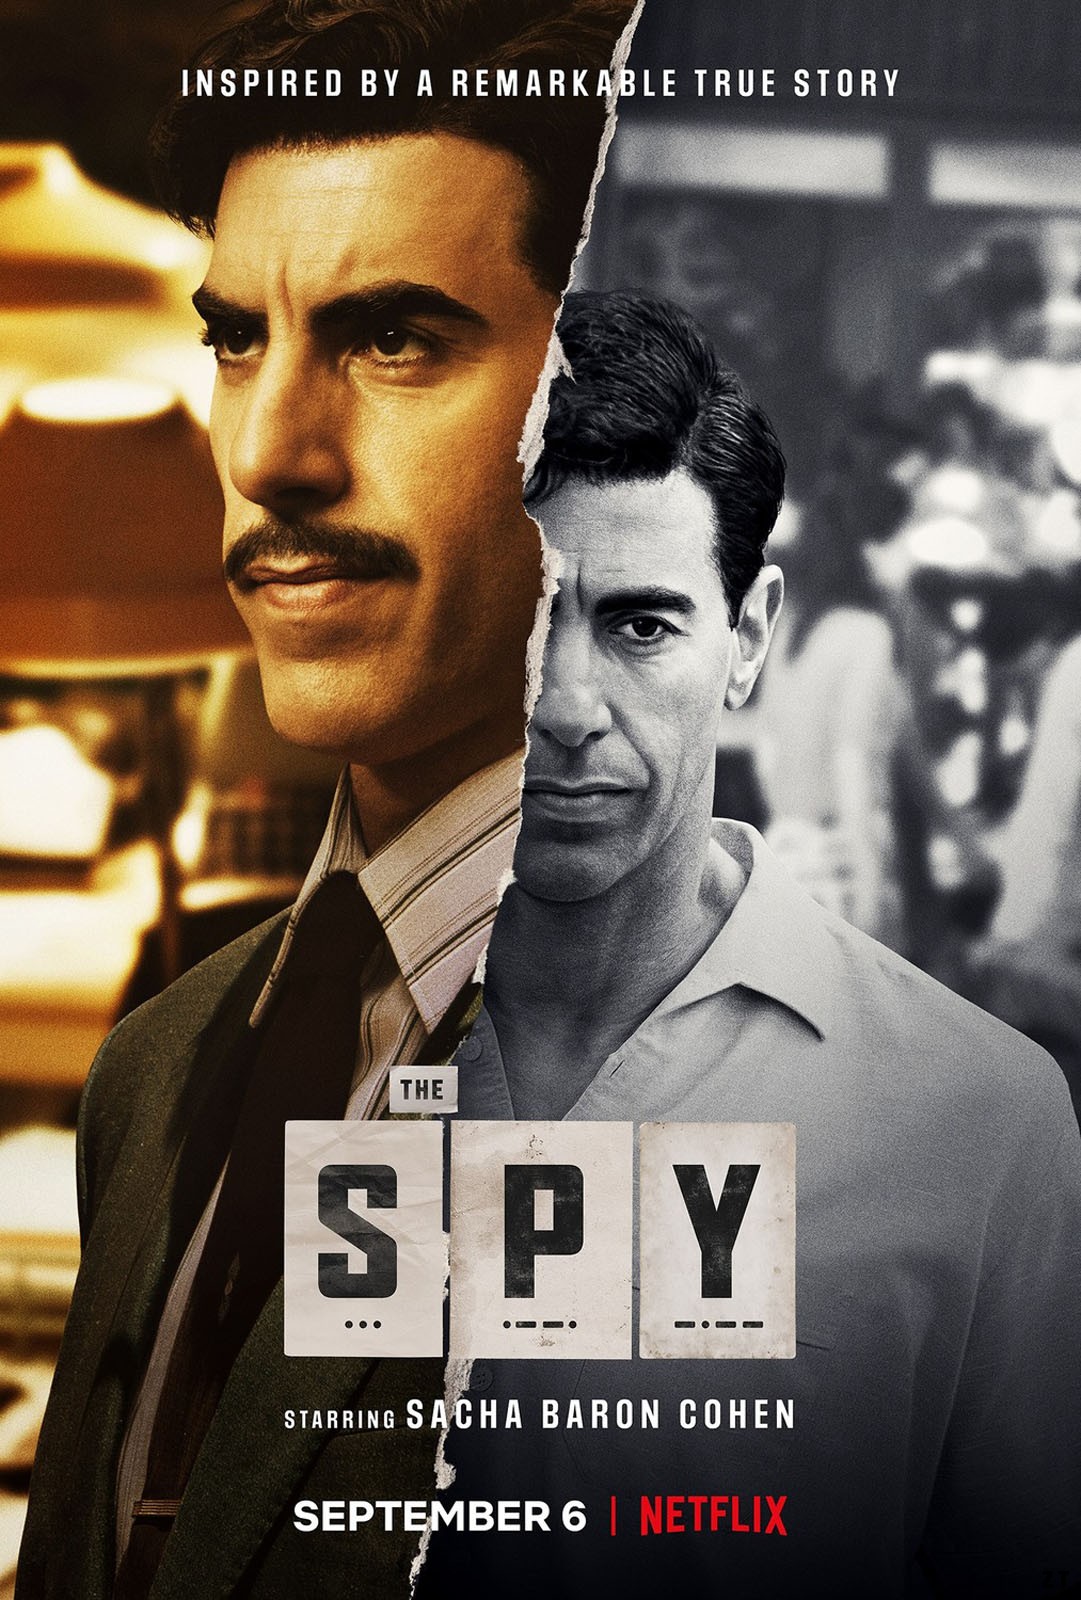 The Spy S01E05 VOSTFR HDTV